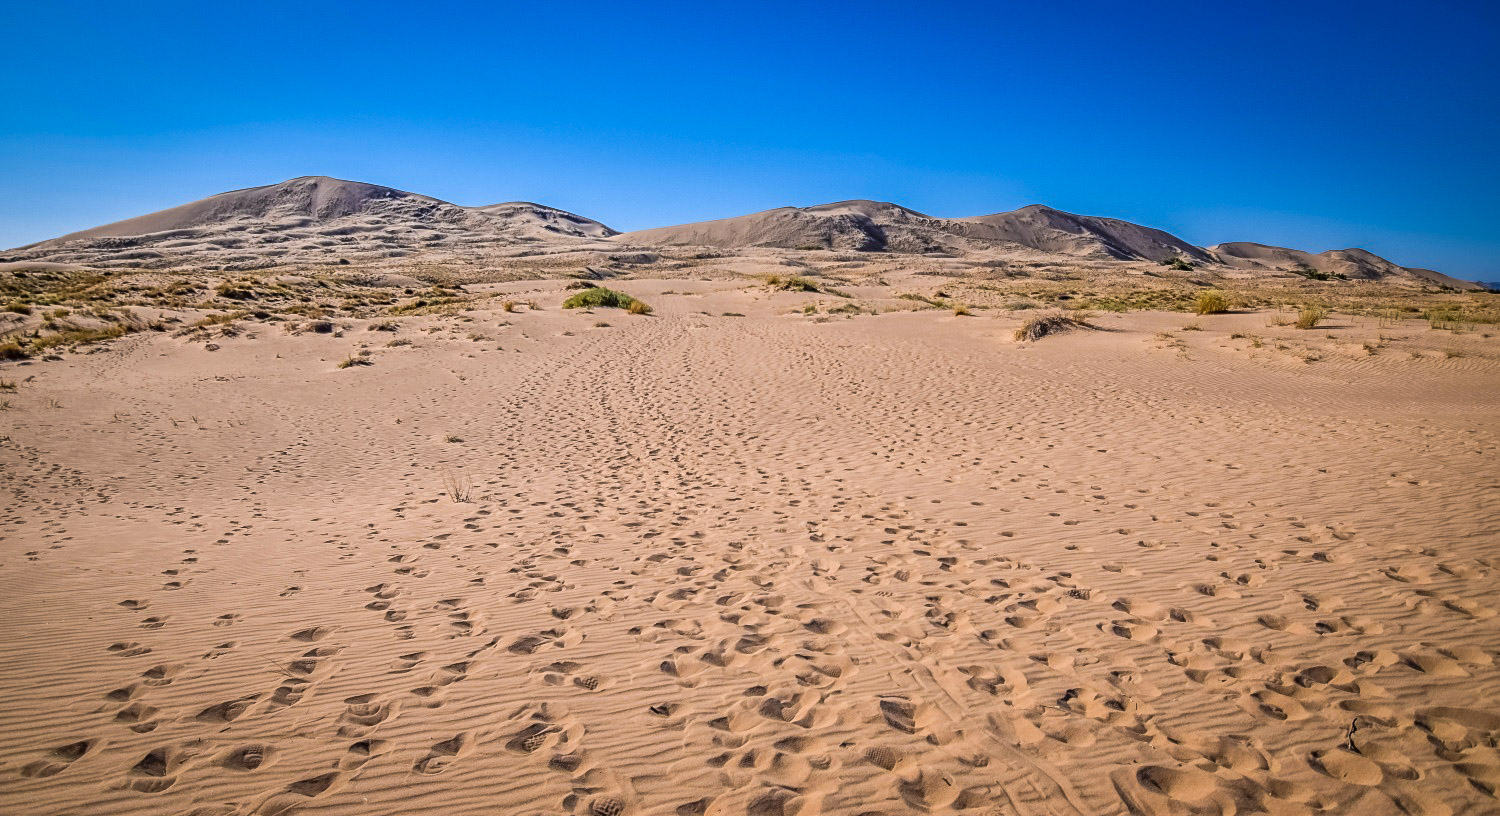 加州最佳沙漠徒步旅行:凯尔索沙丘小径